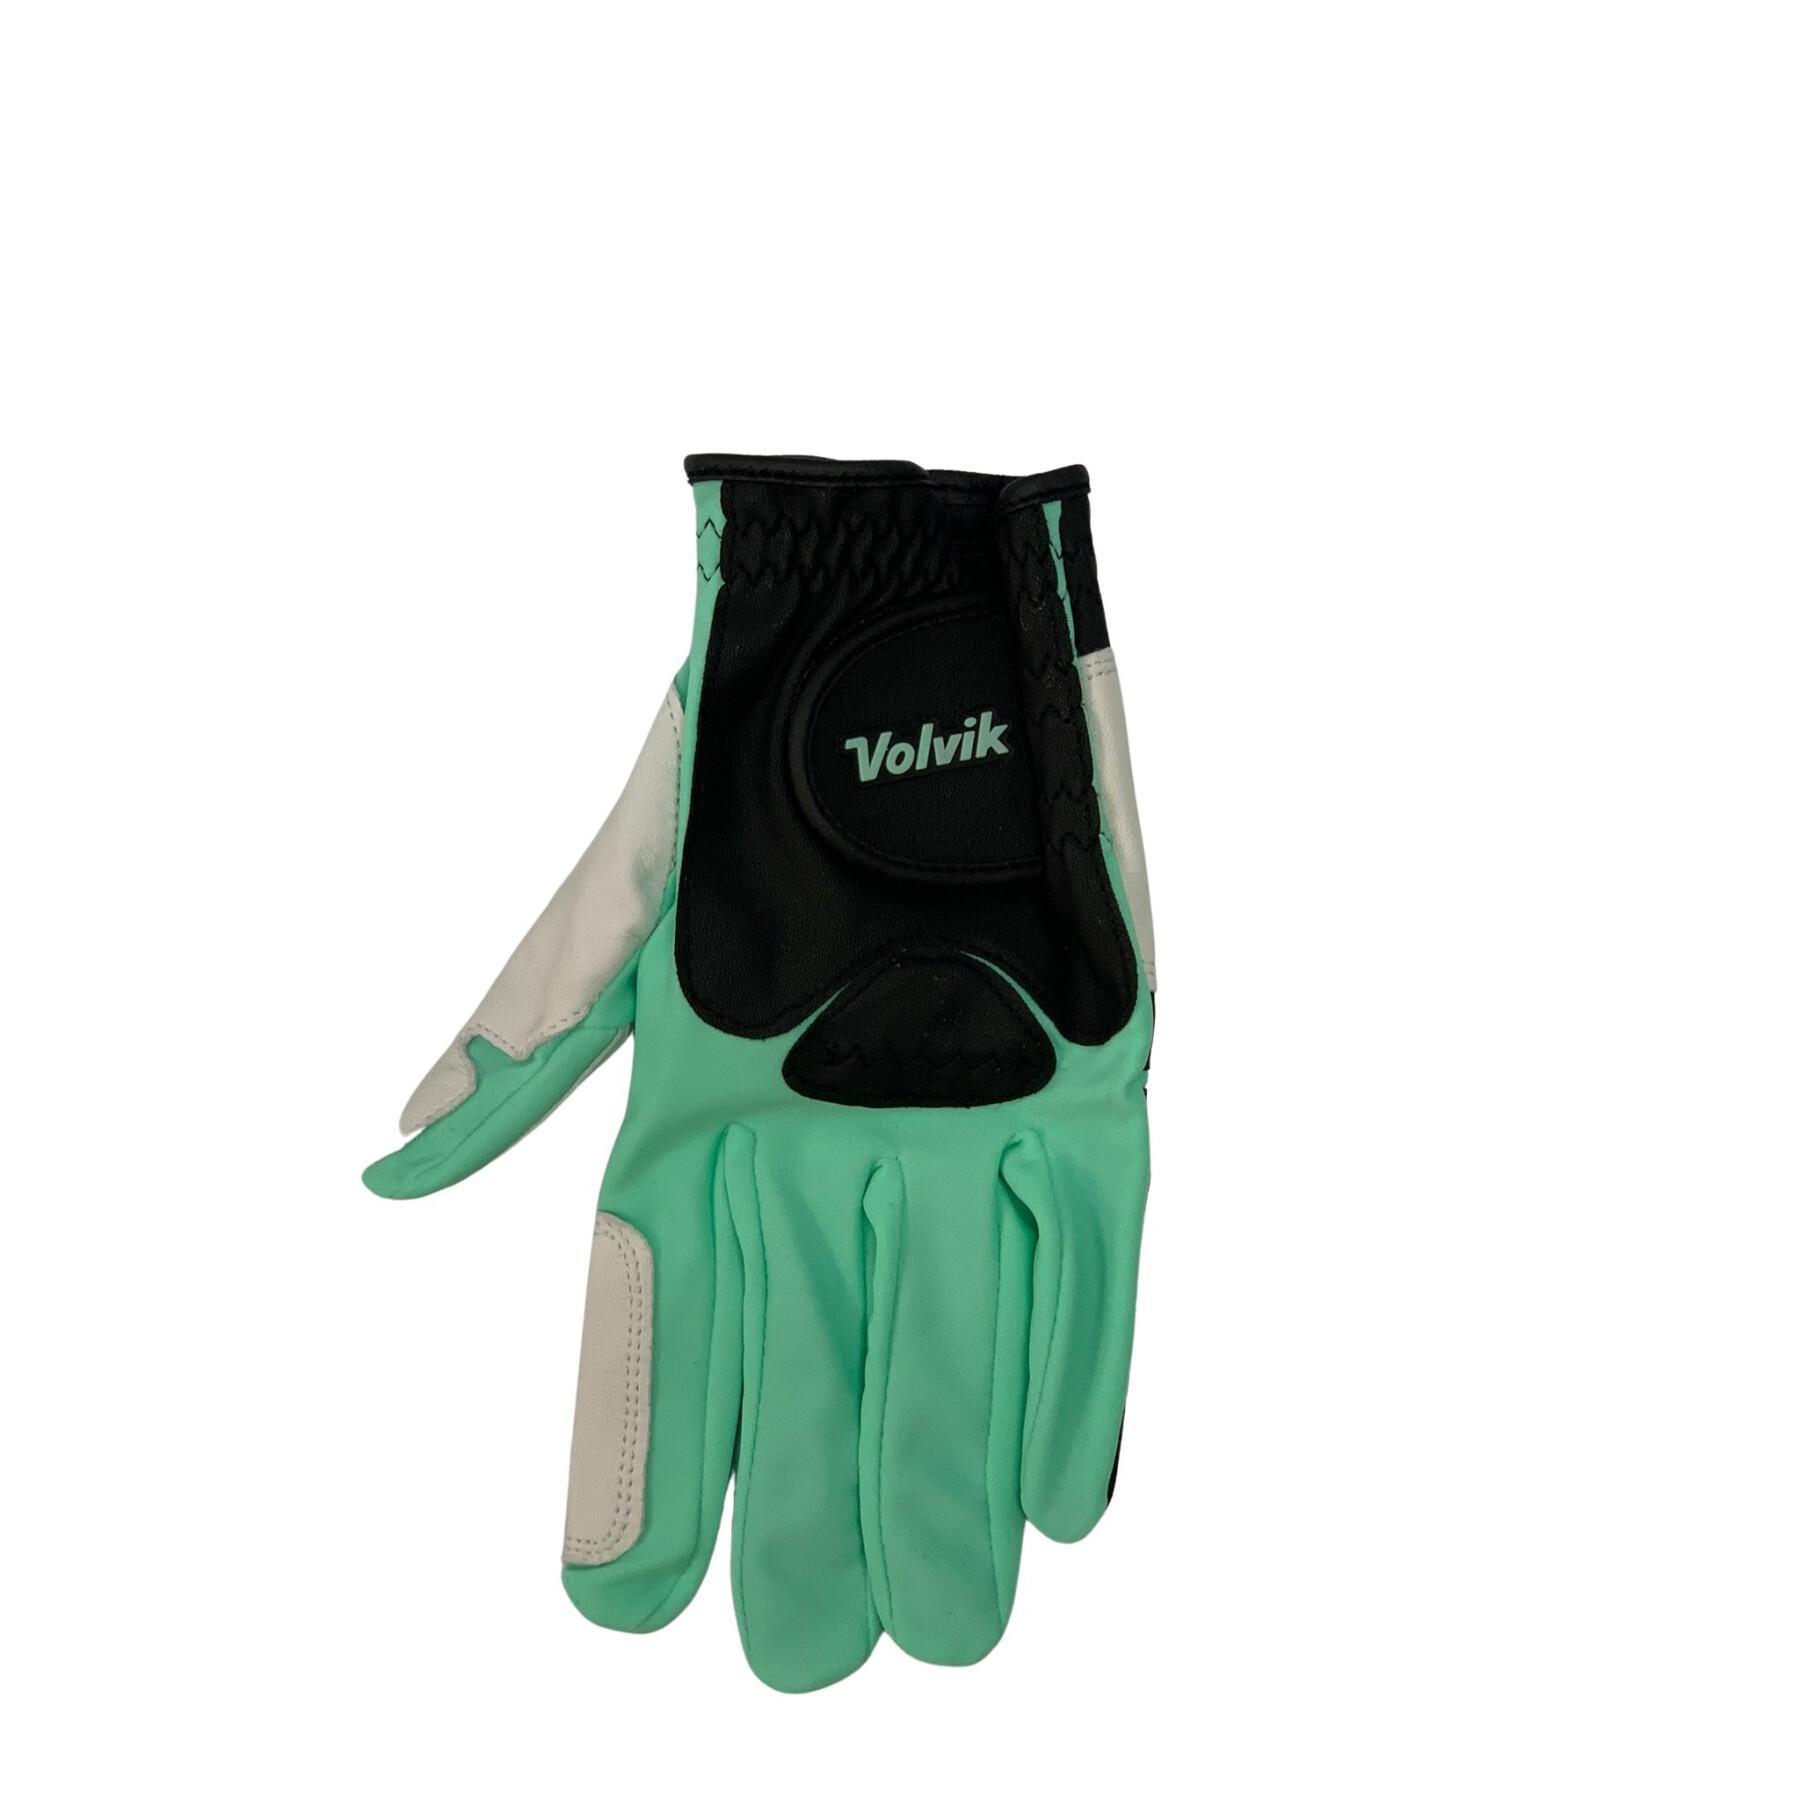 Golf glove for right-handed women Volvik